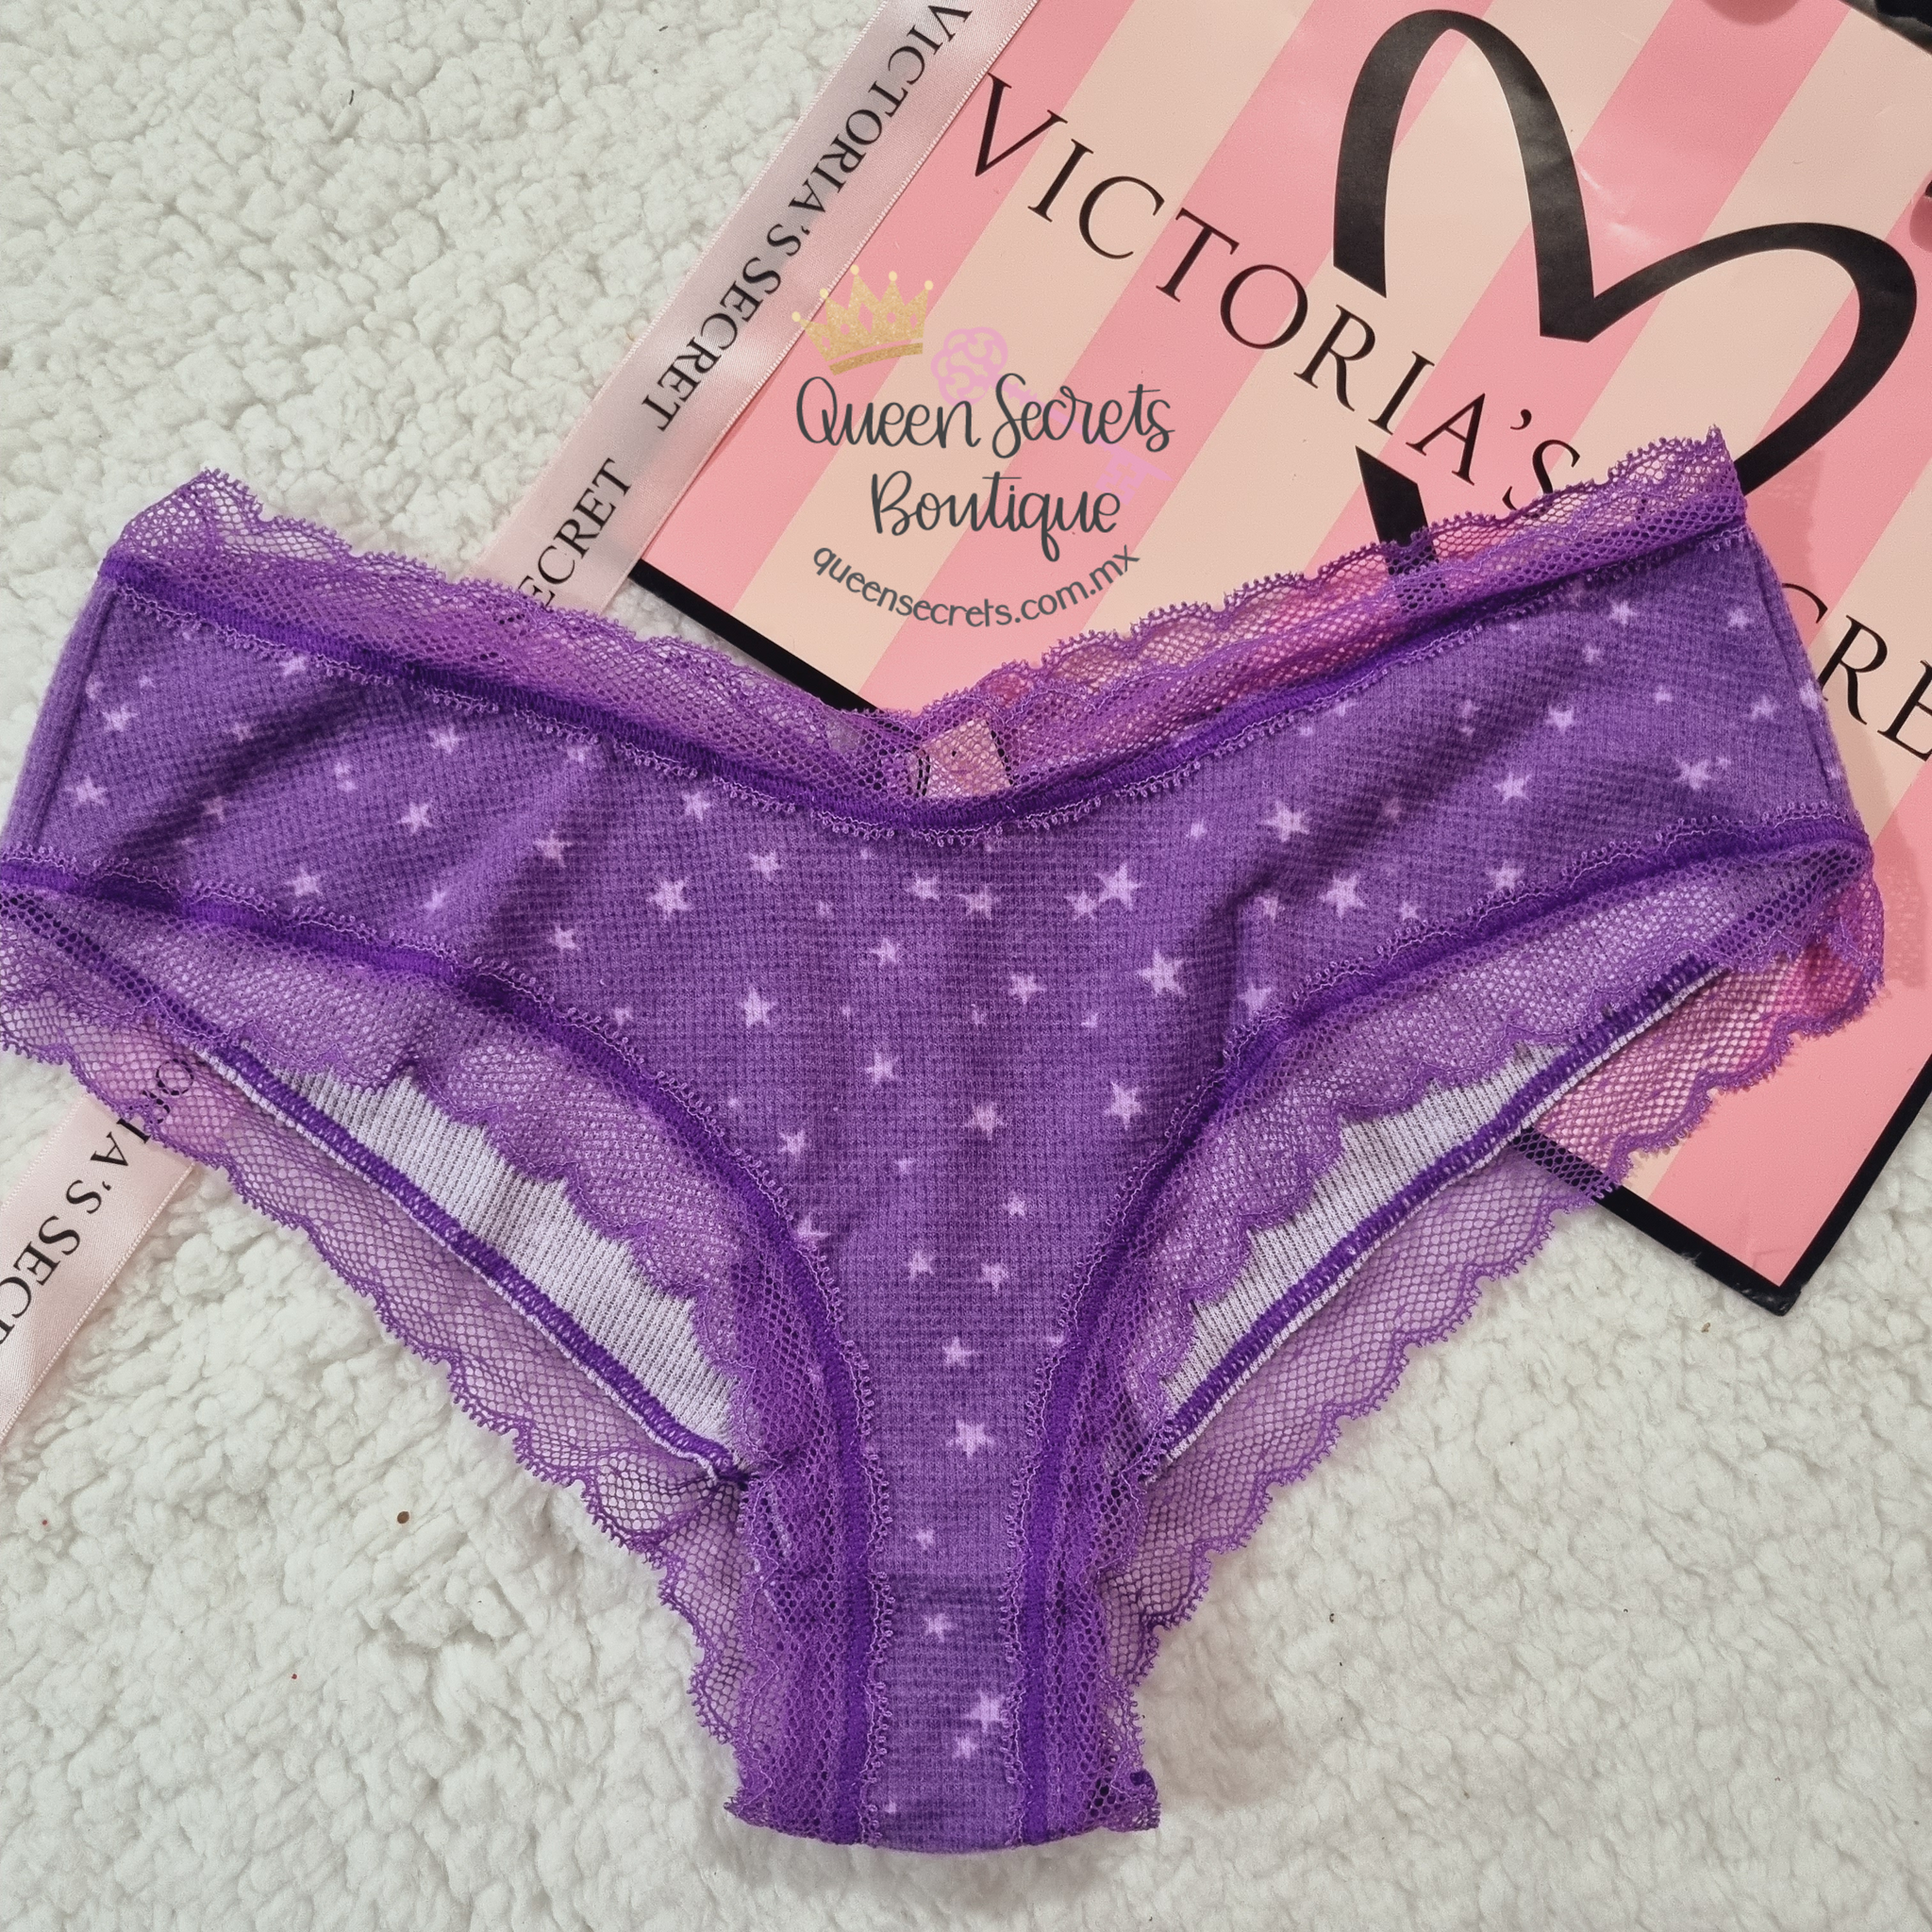 Panty mod. 56 L Victoria's Secret